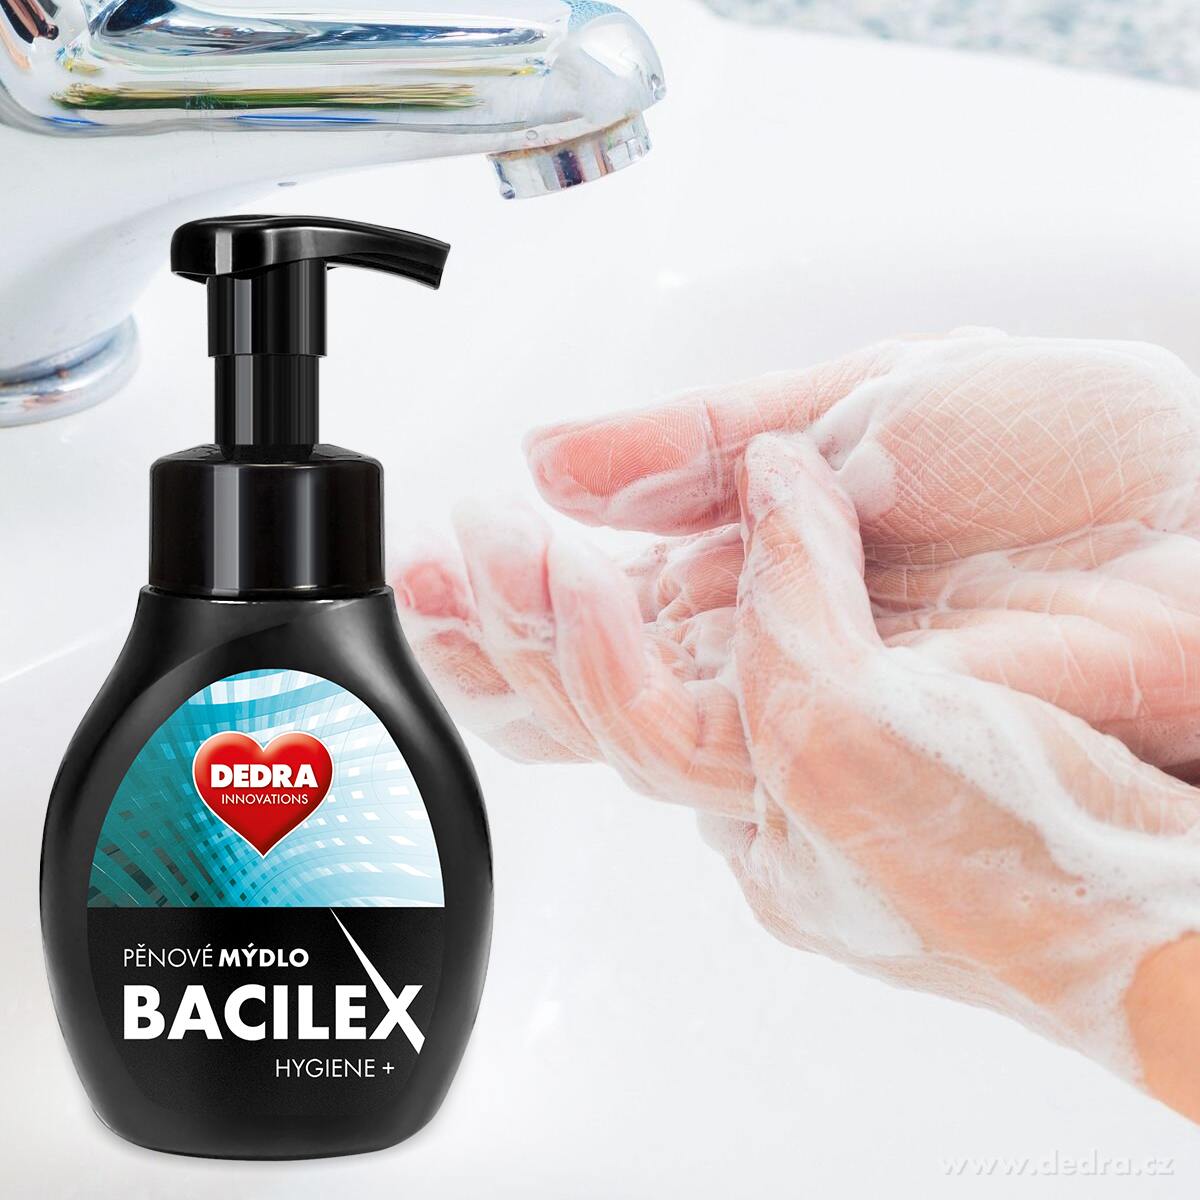 SADA 1+1 pěnové mýdlo s antibakteriální přísadou BACILEX HYGIENE+